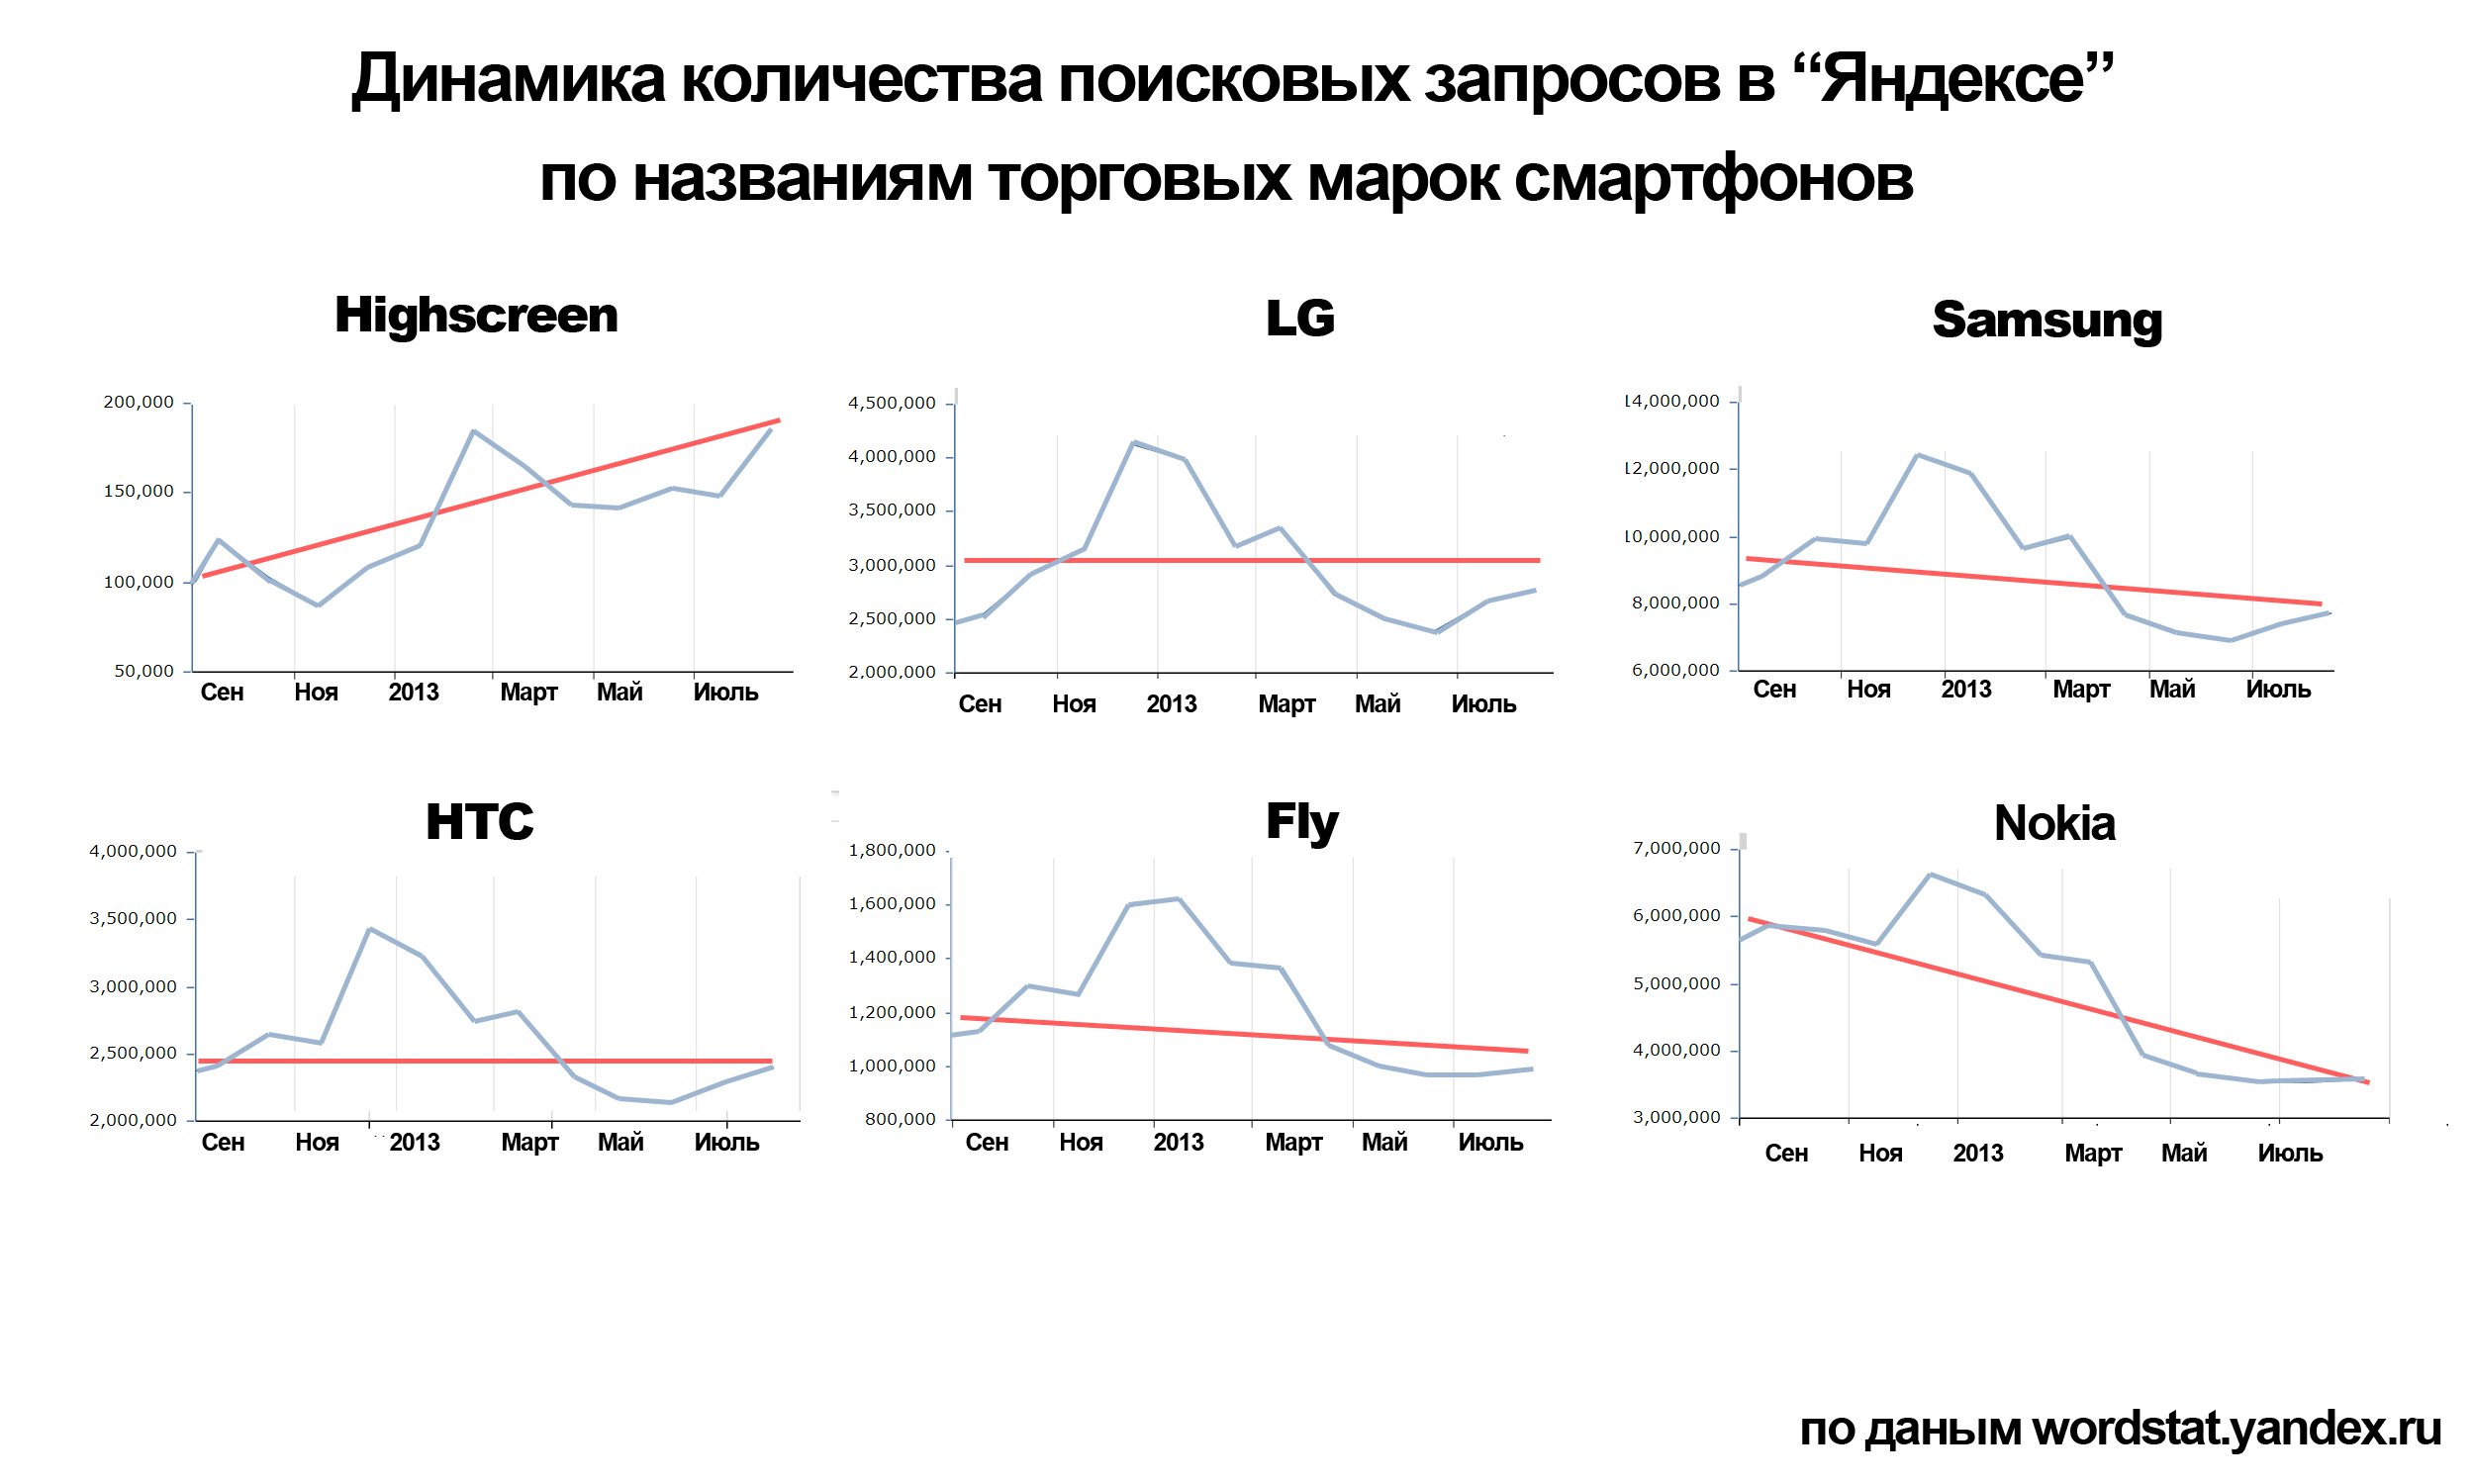 Статистика популярности смартфонов на Яндексе.